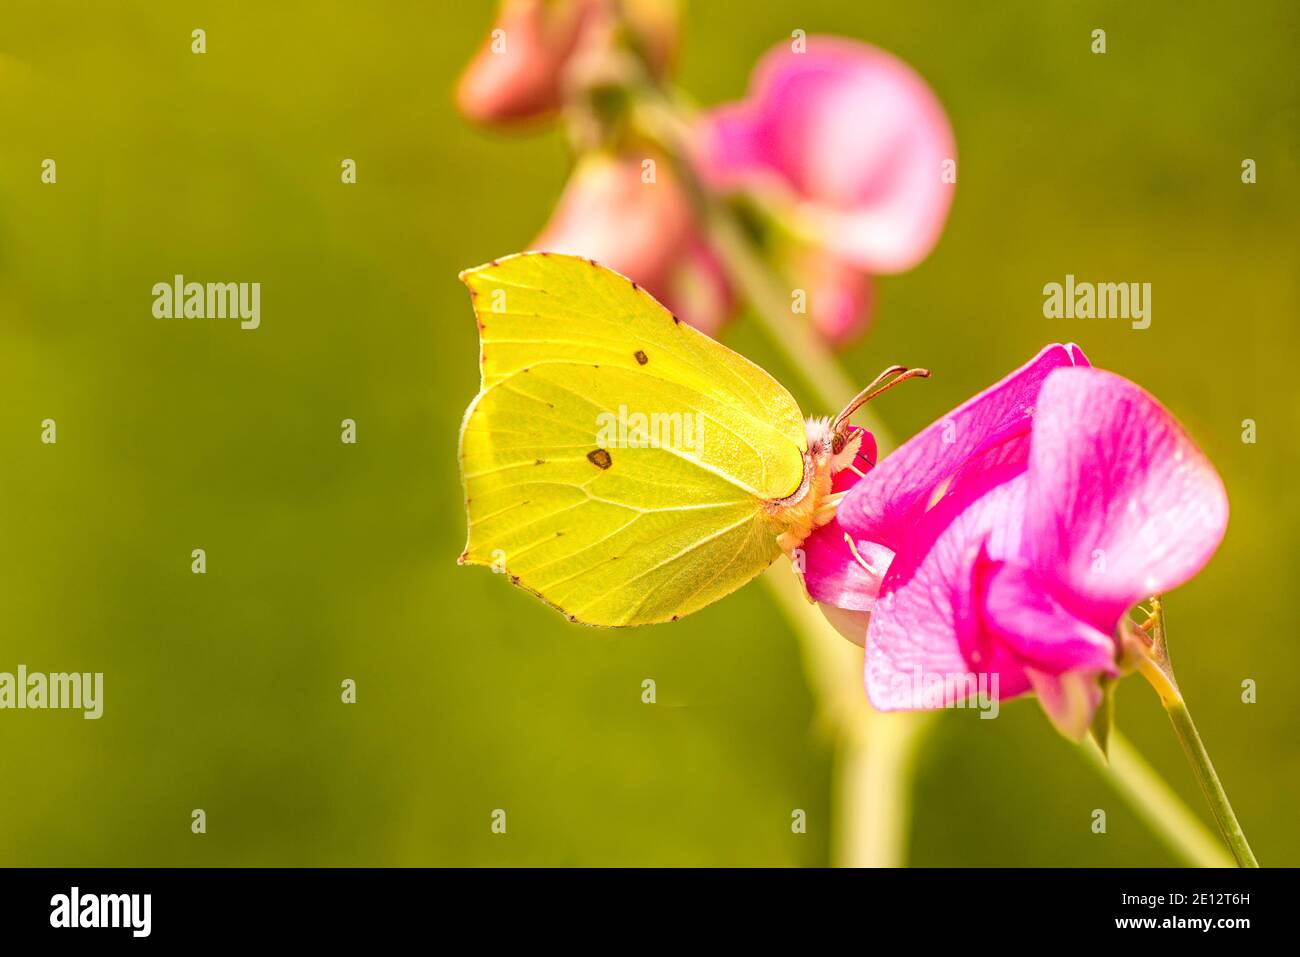 Brimstone Butterfly On Vetch Flower Stock Photo